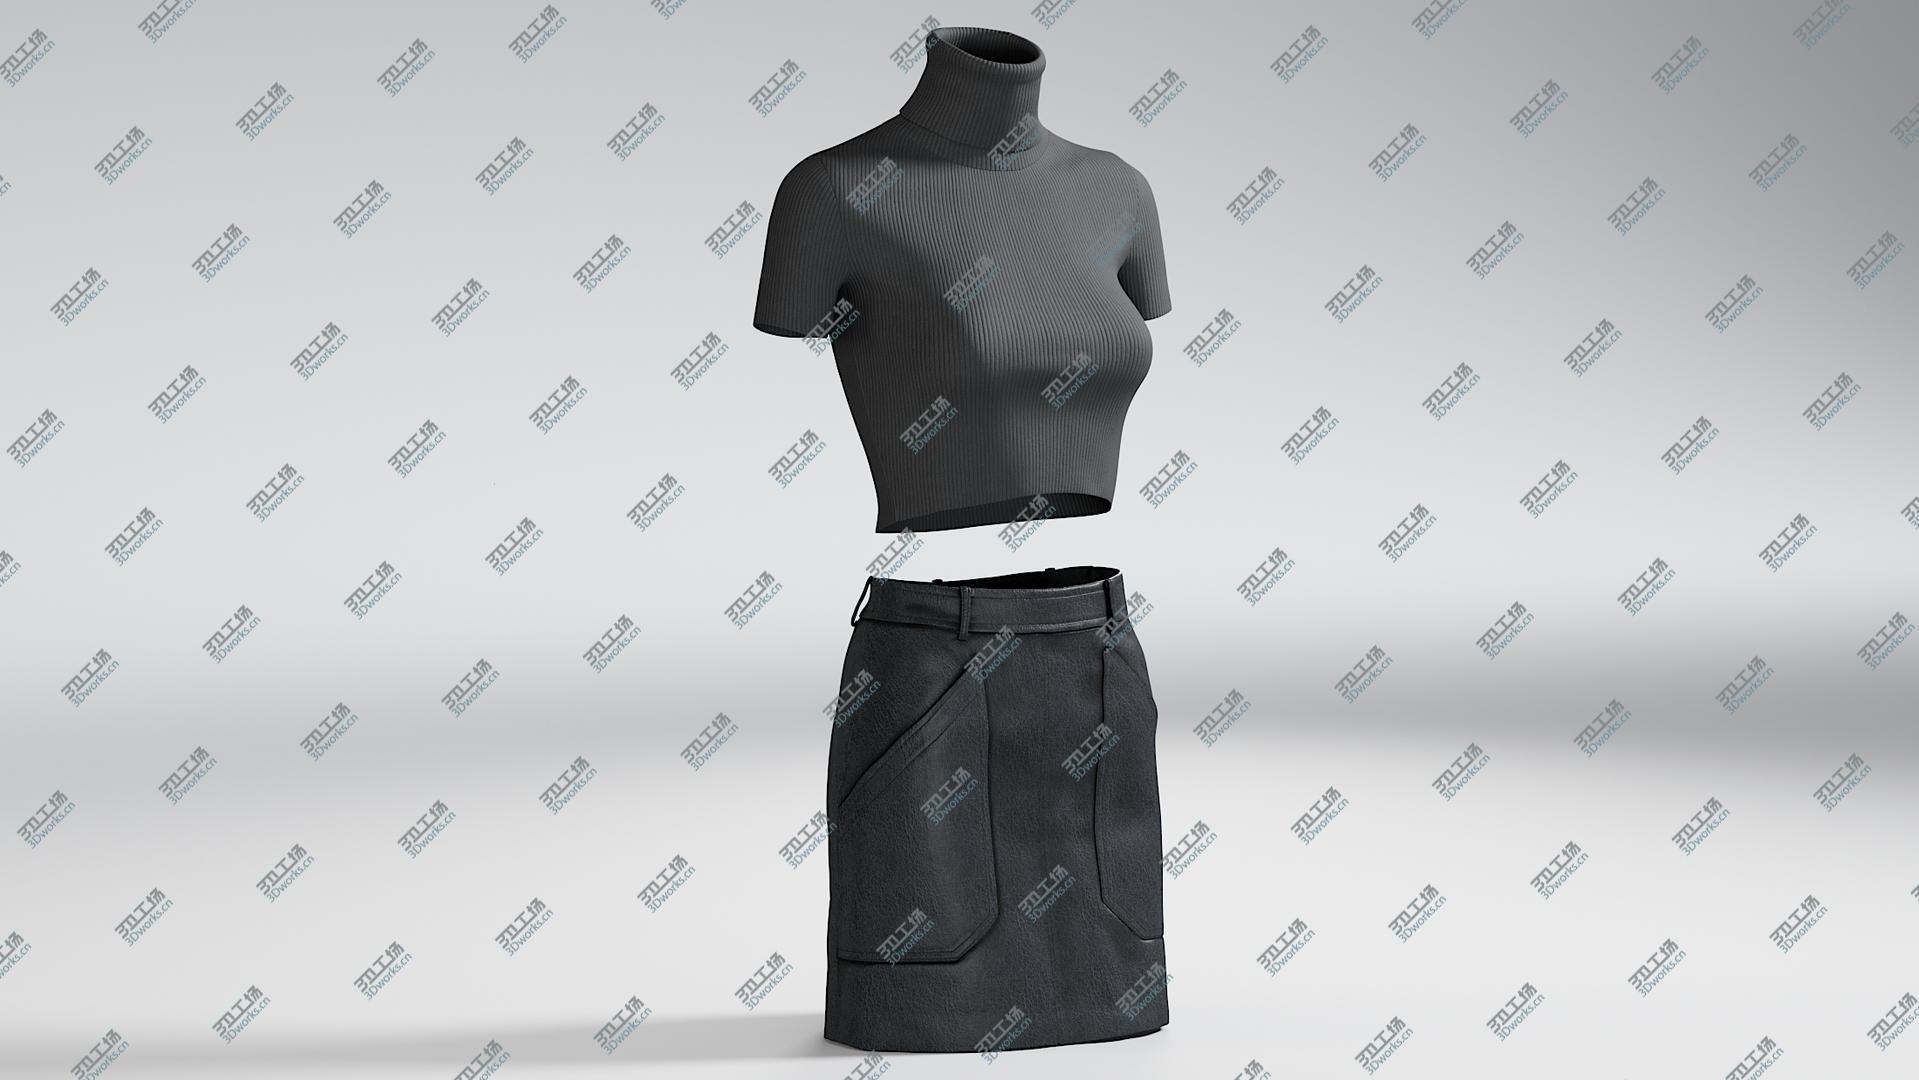 images/goods_img/202104091/Women's Skirt with TShirt 1 3D model/4.jpg